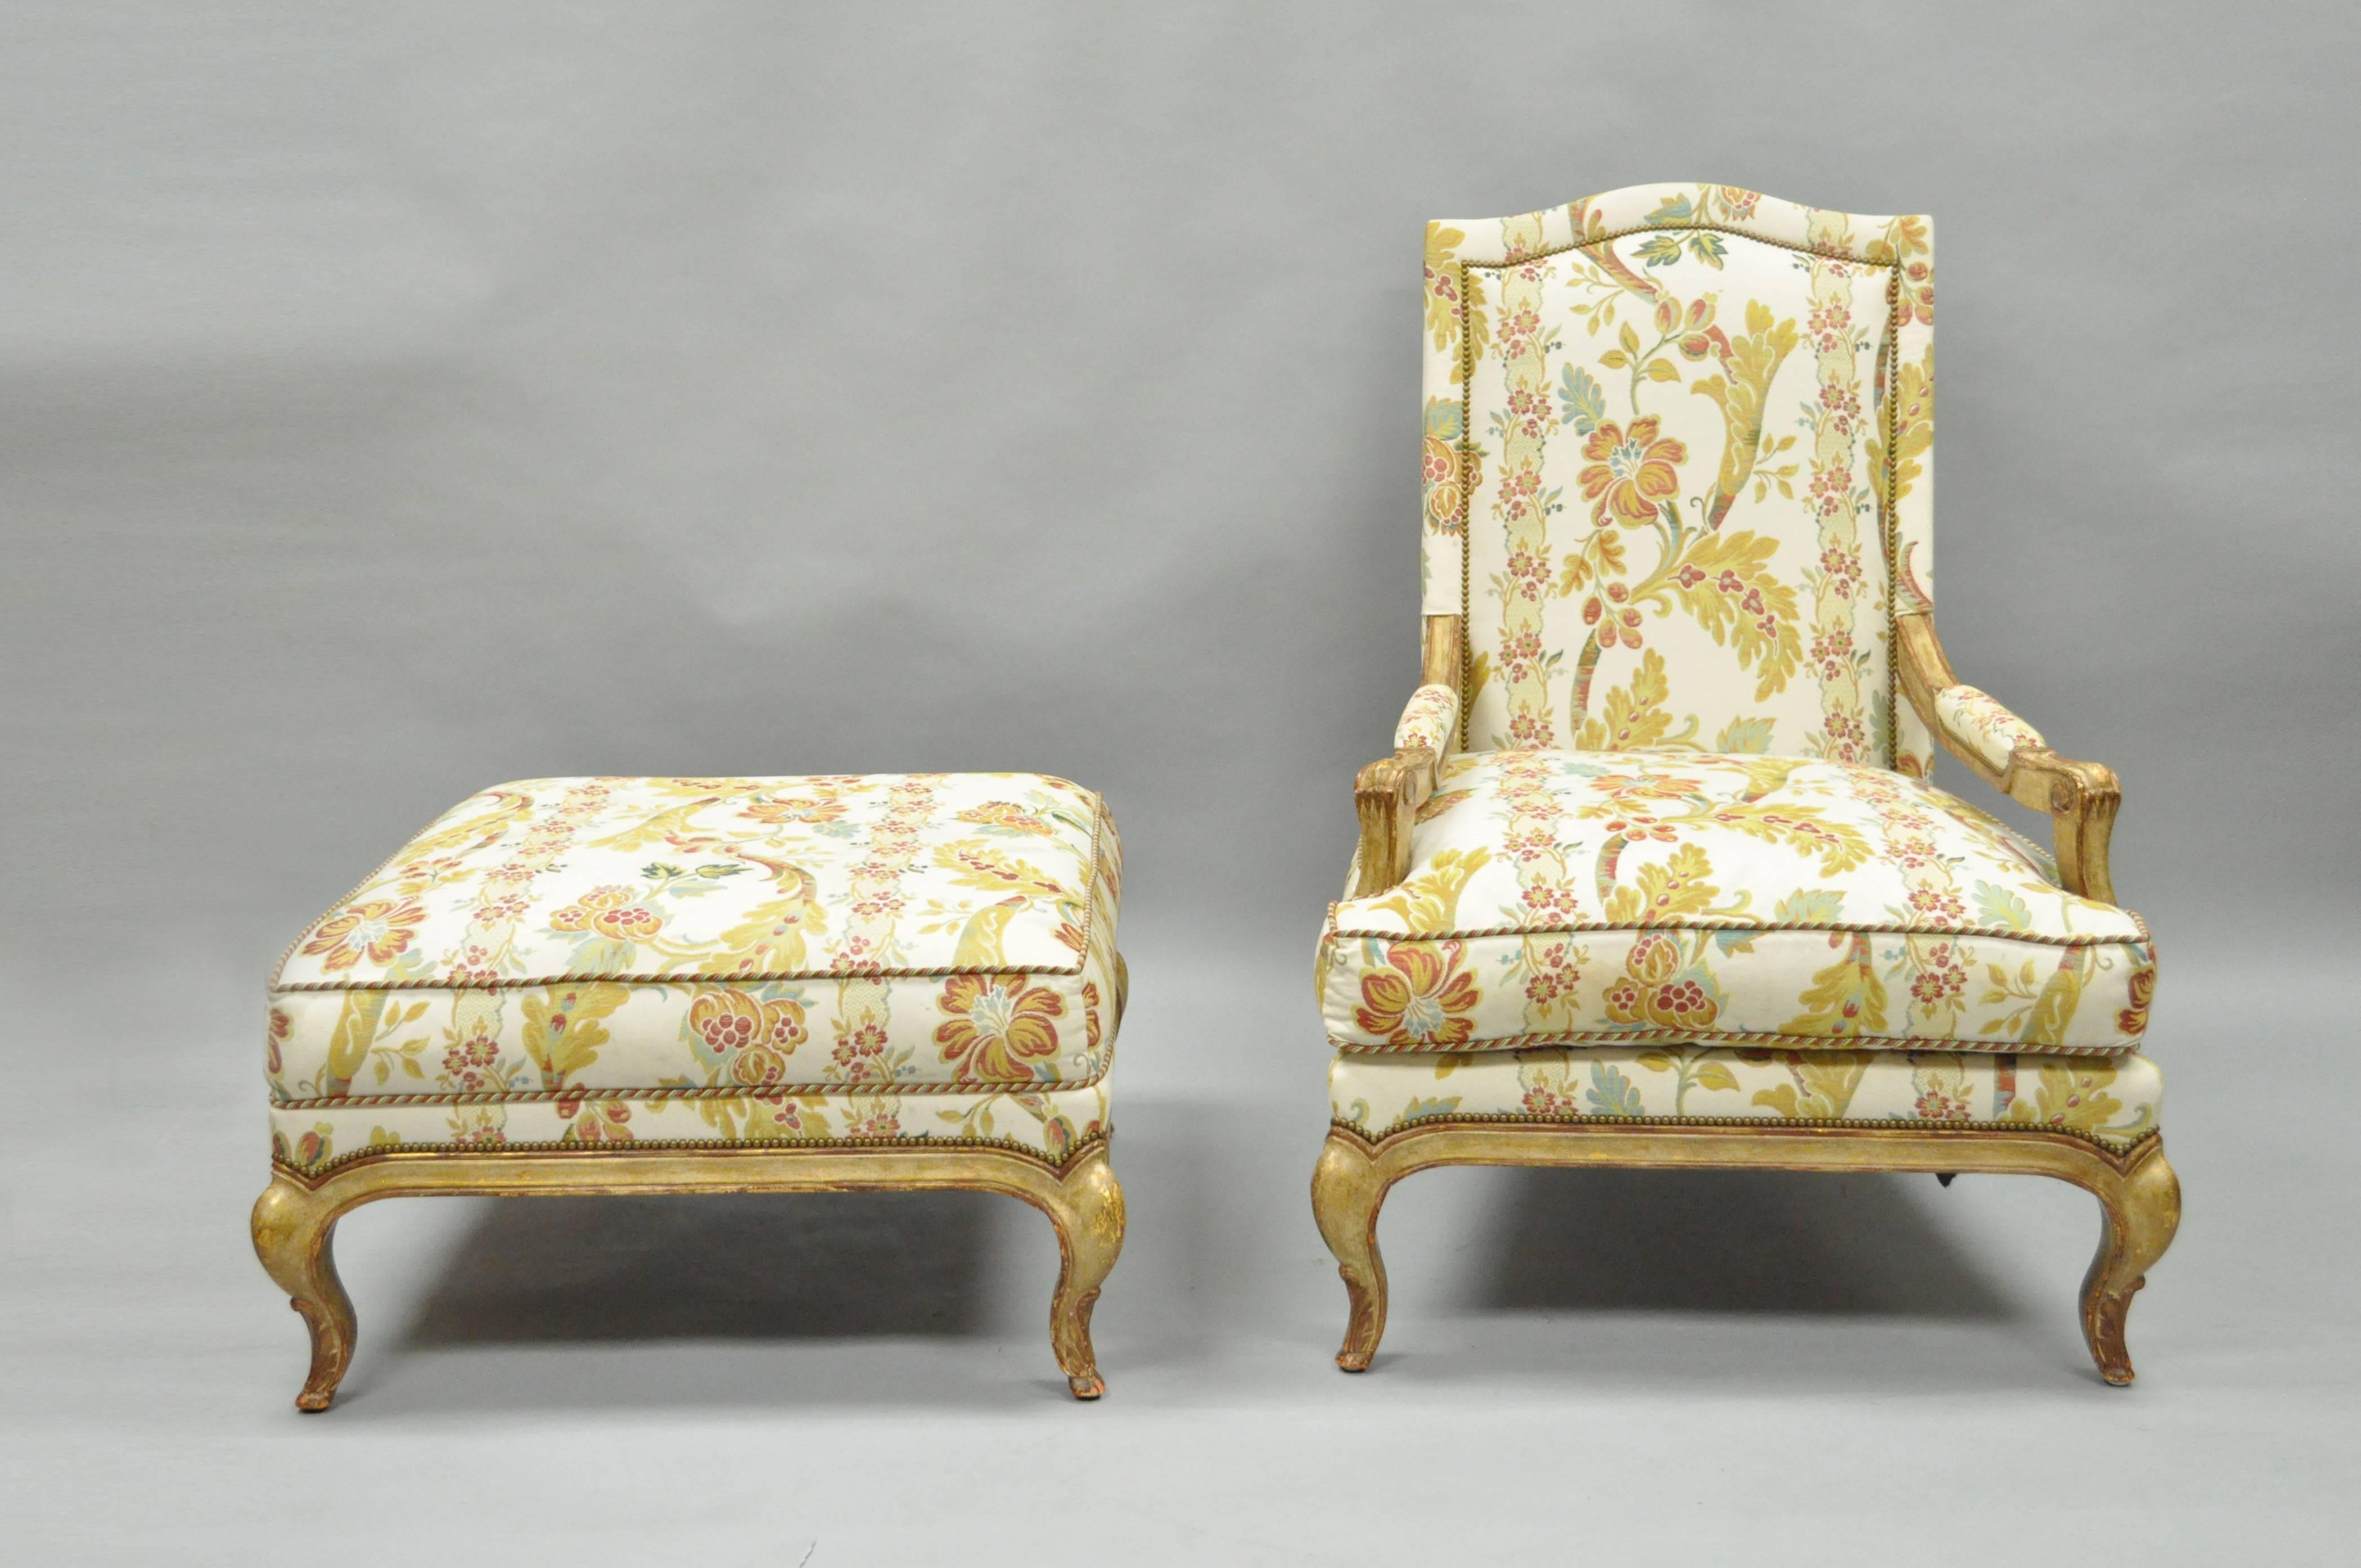 Hochwertiger gepolsterter Bergere-Sessel im Landhausstil (Louis XV) und passende Ottomane von Nancy Corzine. Der Stuhl hat eine stattliche Form mit einem leicht geschnitzten Massivholzrahmen, formschönen Cabriole-Beinen und einer schönen Polsterung